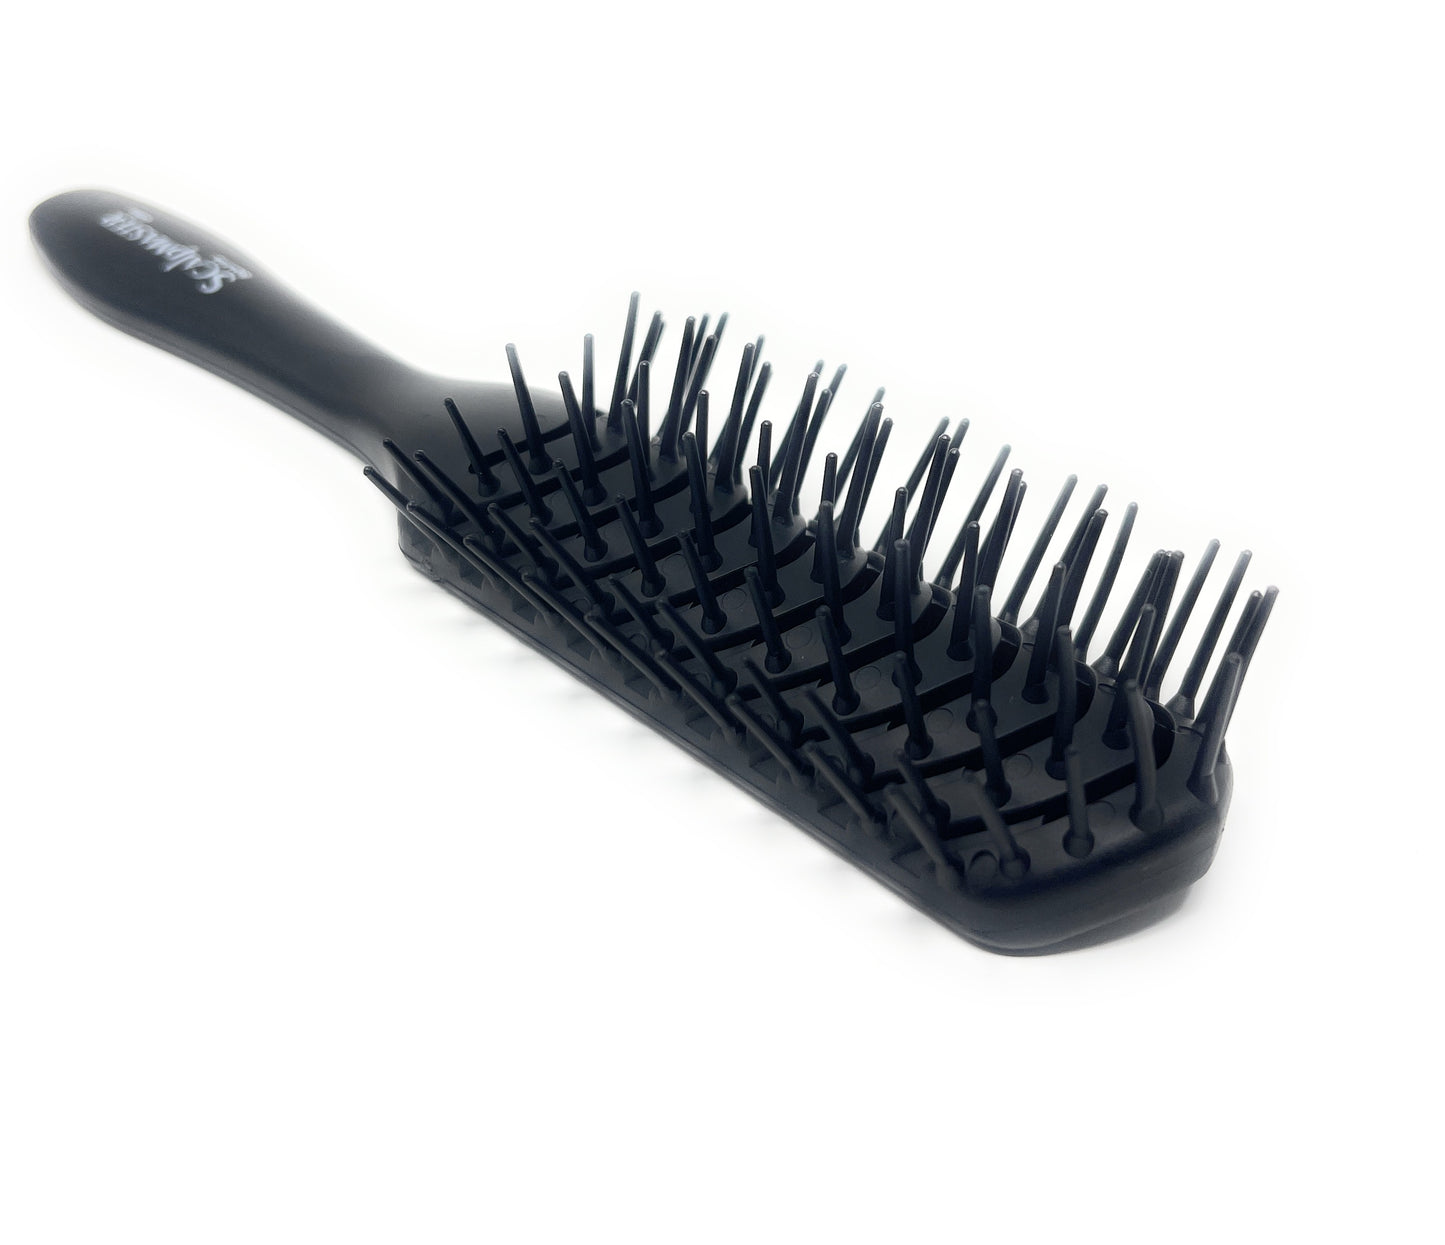 Scalpmaster Vent Hair Brush Soft Flexible Teeth For Detangling Hair Brush Straightening Brush 1 Pc.